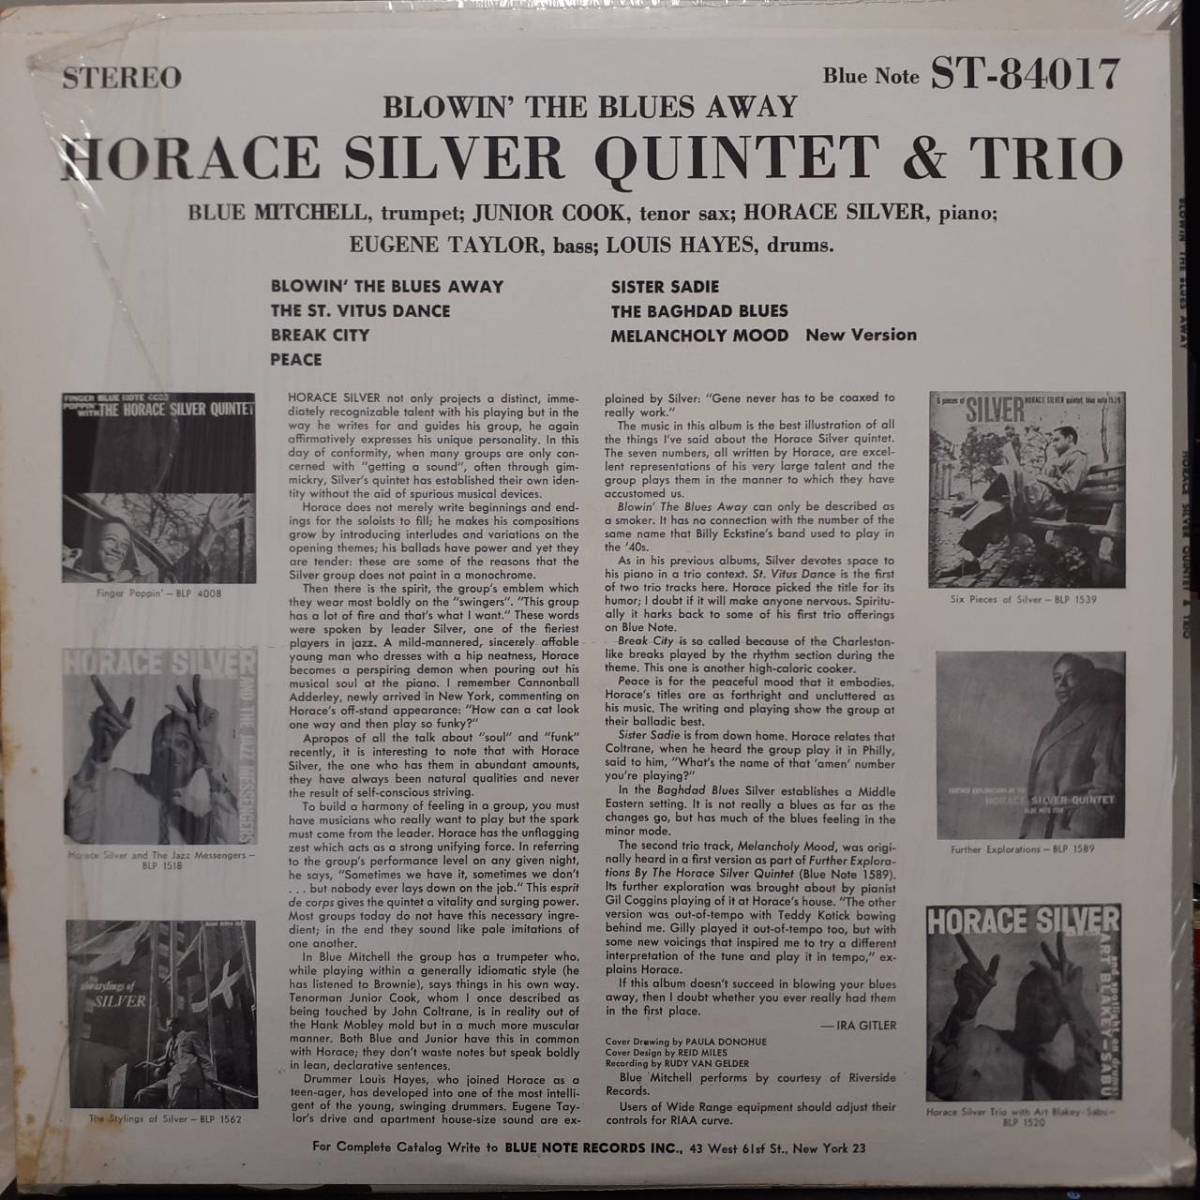 米BLUE NOTEオリジLP！青白ラベル 47WEST 63rd NYC！The Horace Silver Quintet & Trio / Blowin' The Blues Away 59年作 ST-84017 RVG刻印_画像3